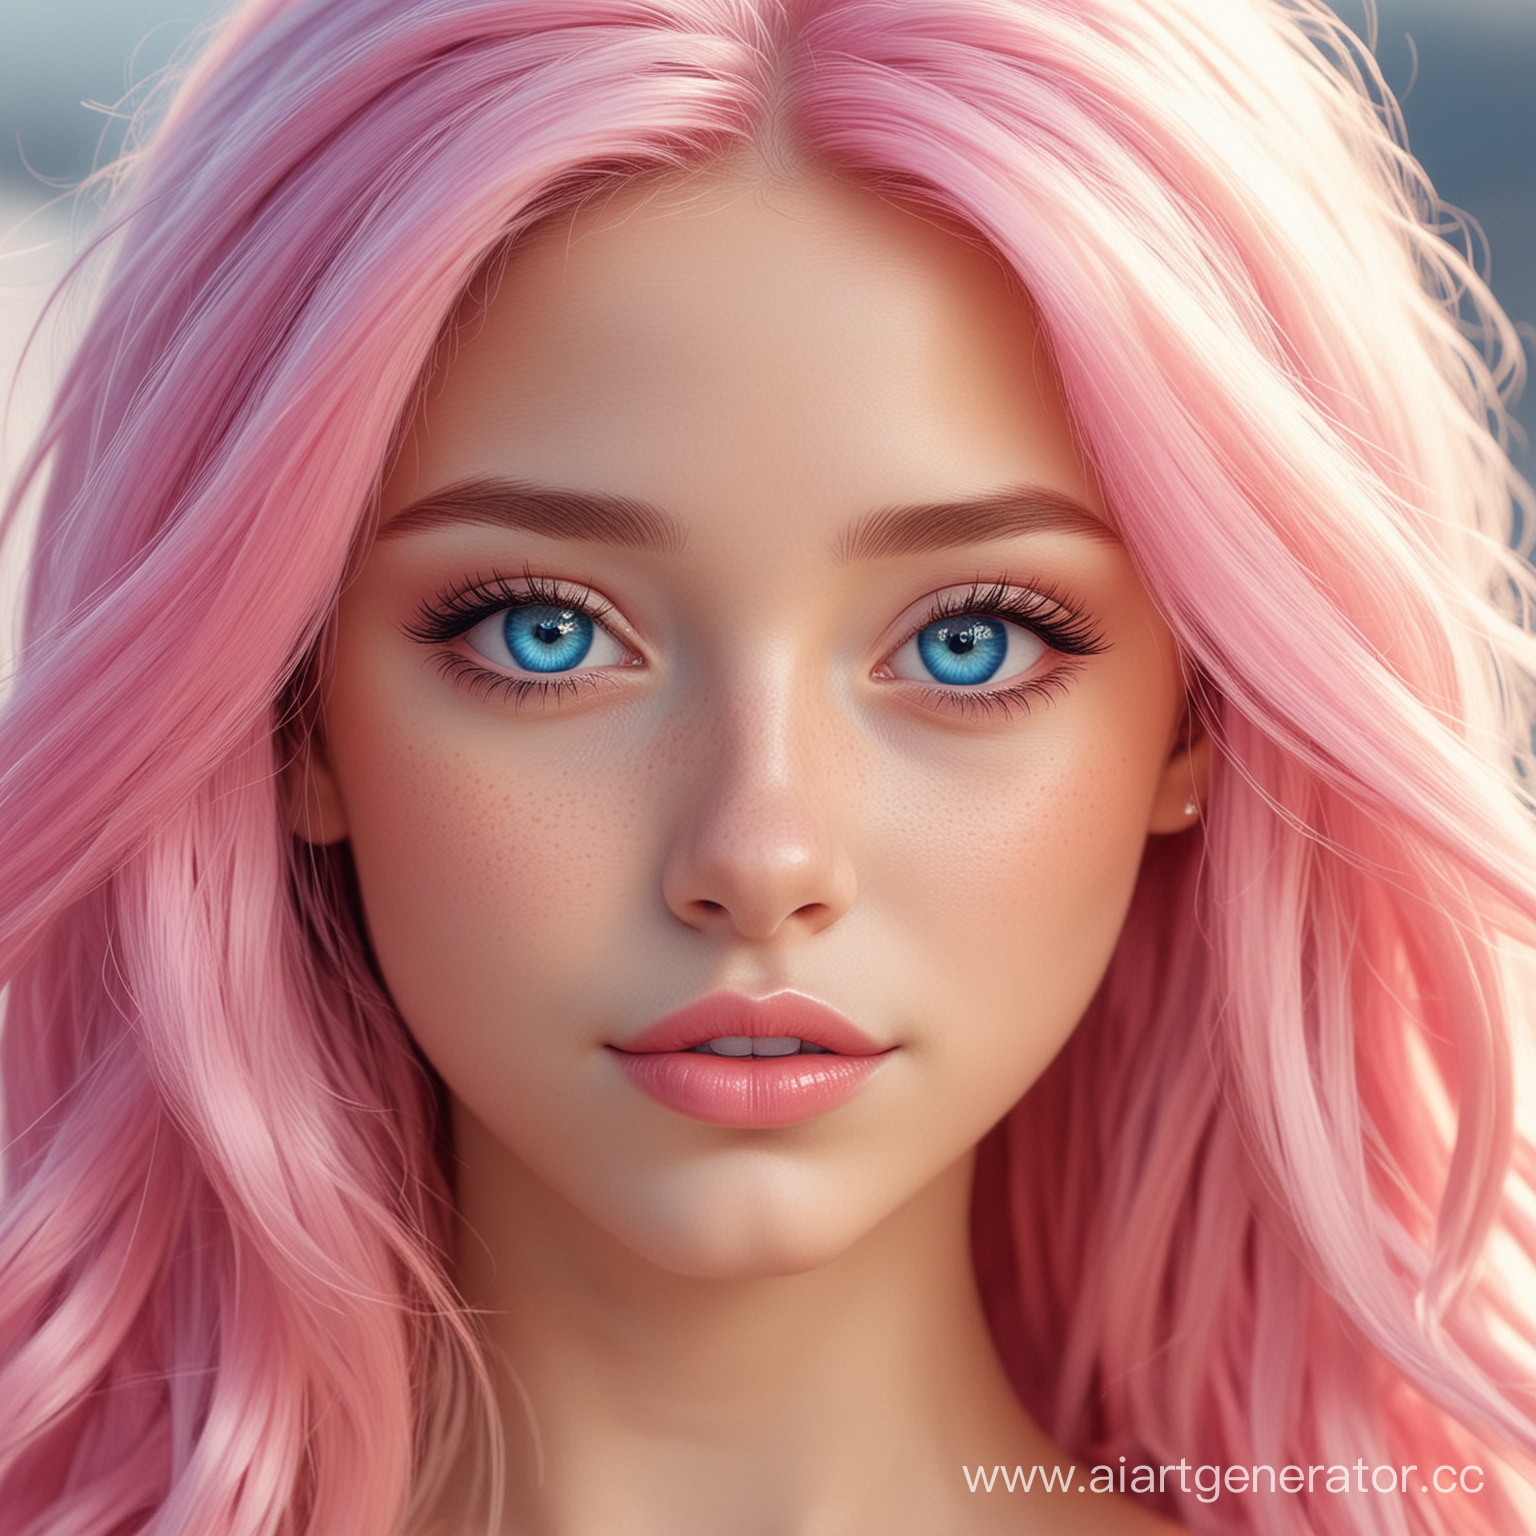 Молодая девушка в стиле мультика  с длинными розовыми волосами и голубыми глазами светлая кожа красивые и аккуратные черты лицо девушки